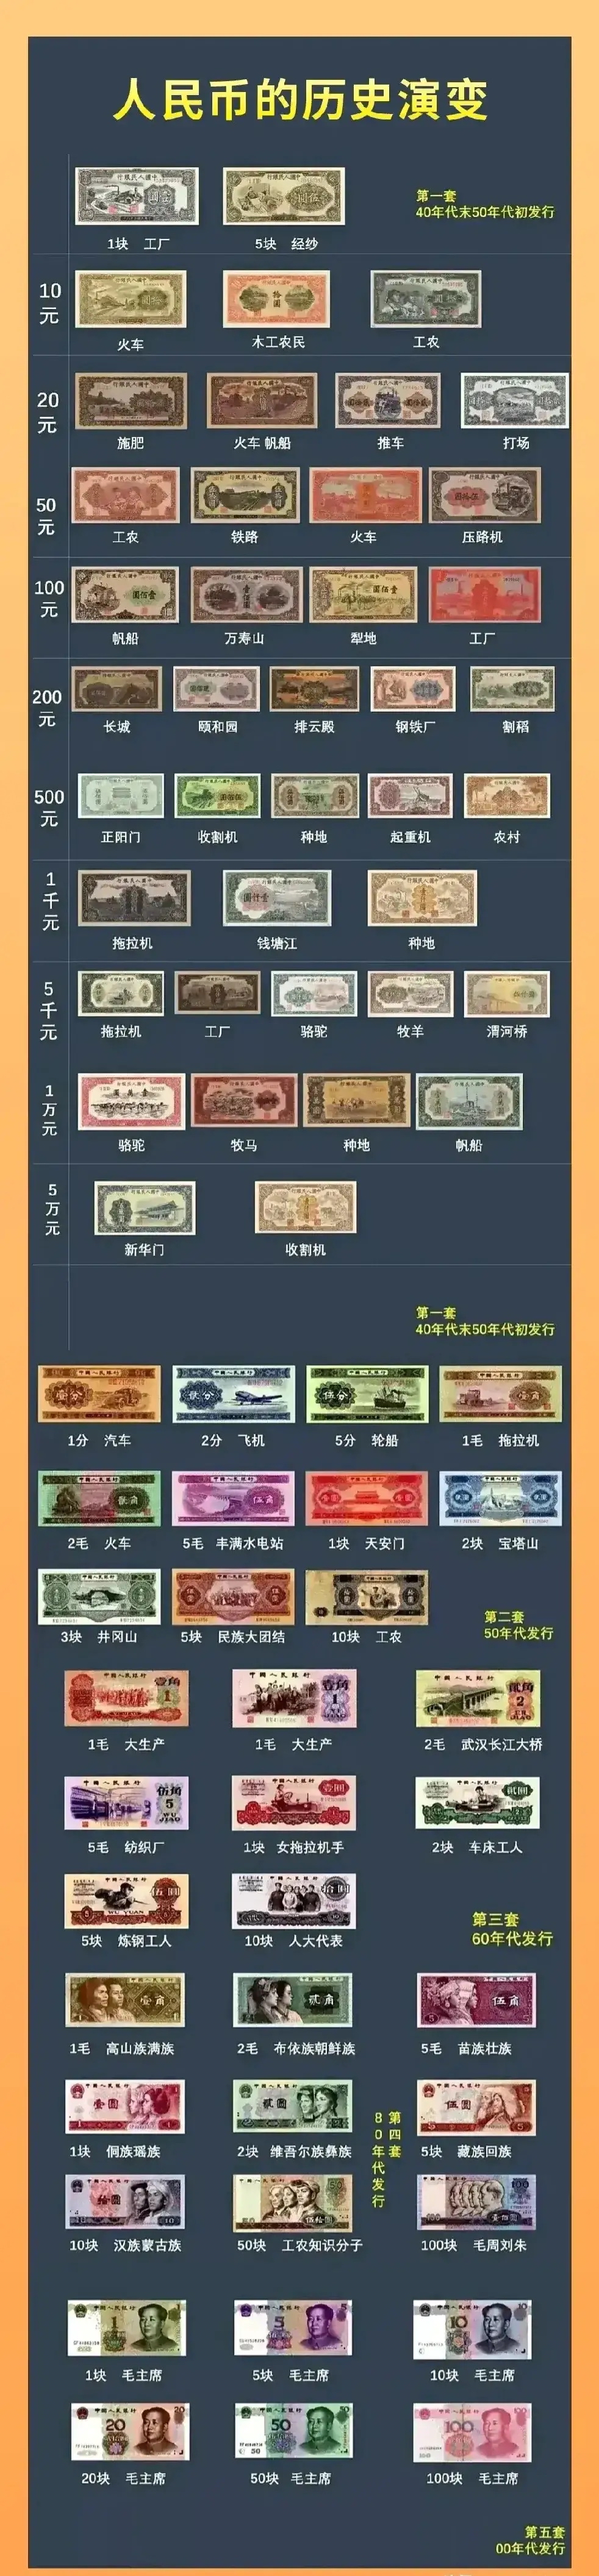 人民币的历史演变,我国目前一共已经发行了5套人民币,每一套人民币都